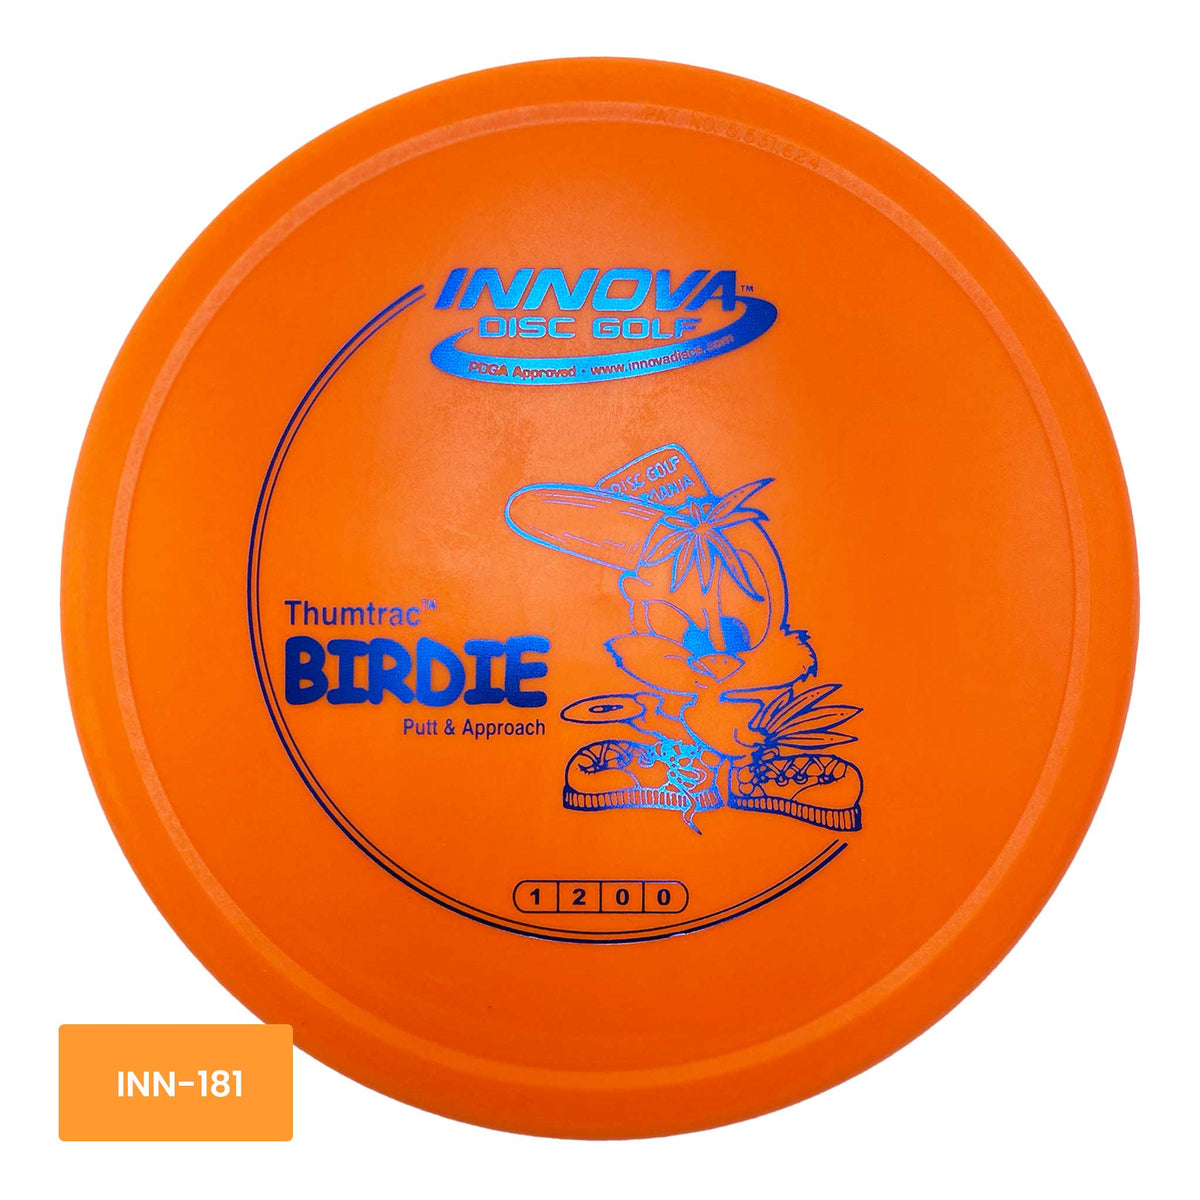 Innova Disc Golf DX Birdie putter and approach -  Orange / Blue